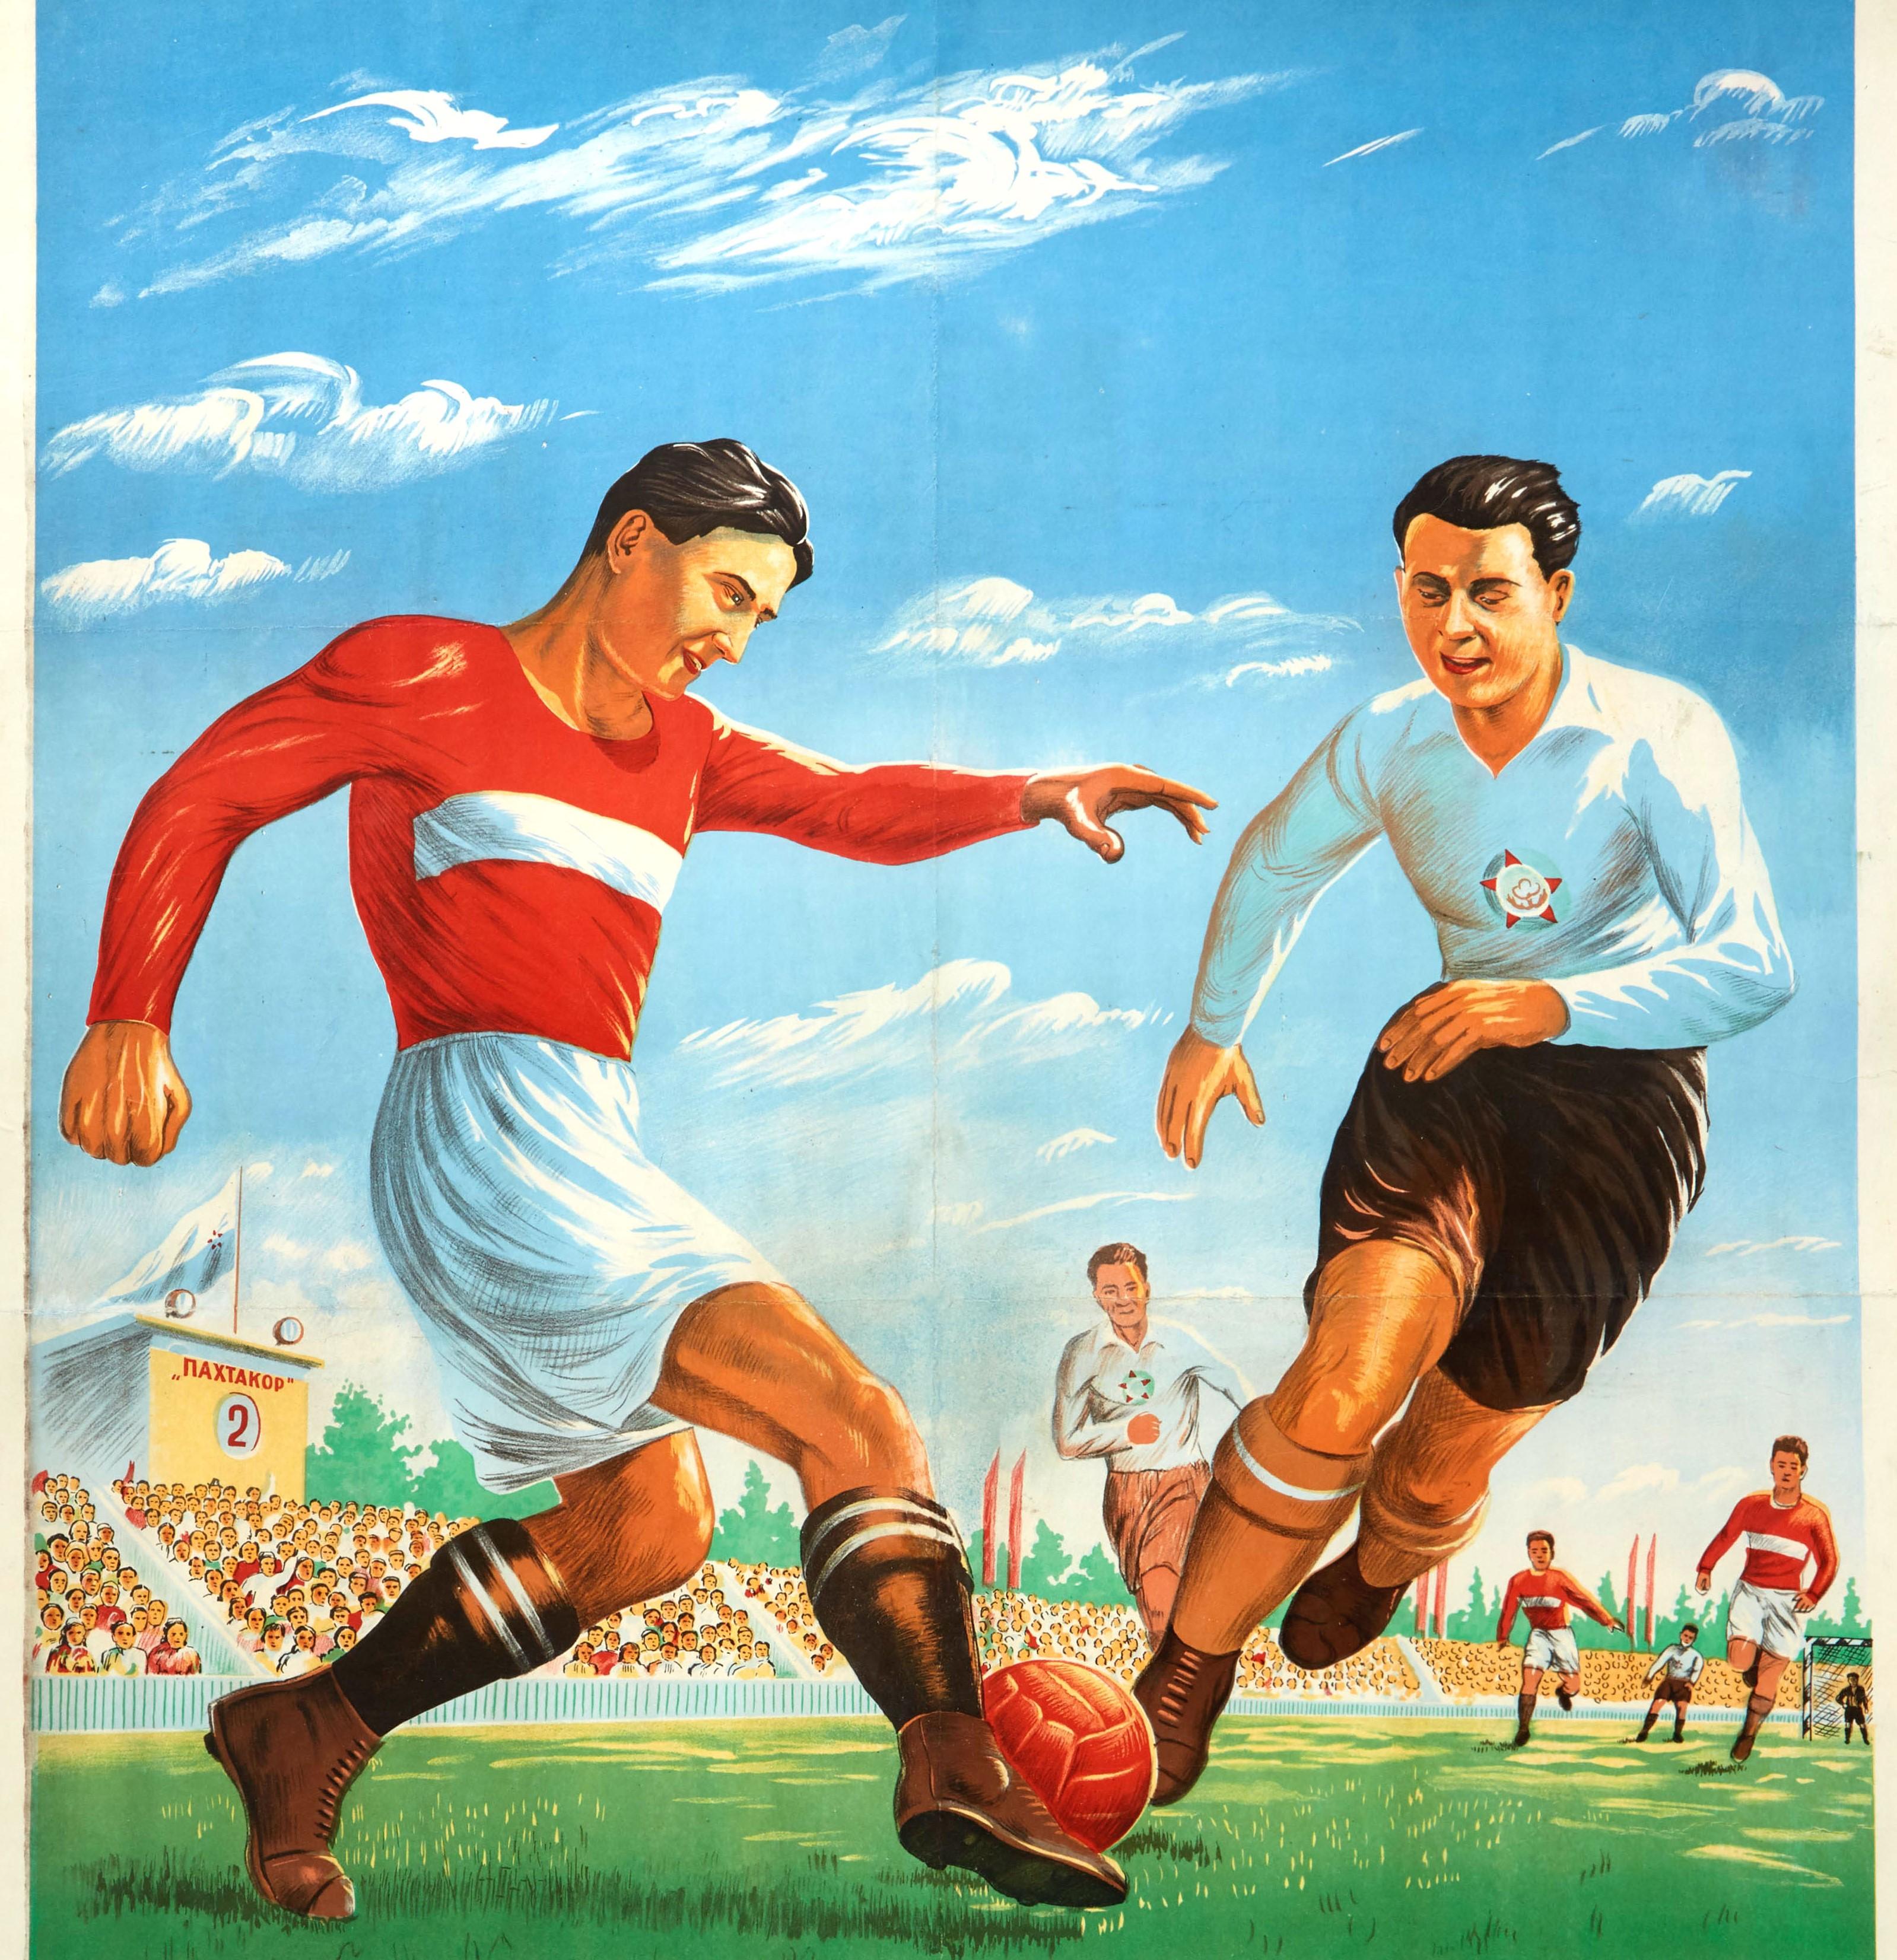 Original-Sportplakat - Football is the Nation's Favourite Game - mit einer dynamischen Illustration von zwei Fußballspielern in roten und blauen Trikots, die den Ball auf einem grünen Rasenplatz kicken, mit dem Torwart in der Ferne und einer